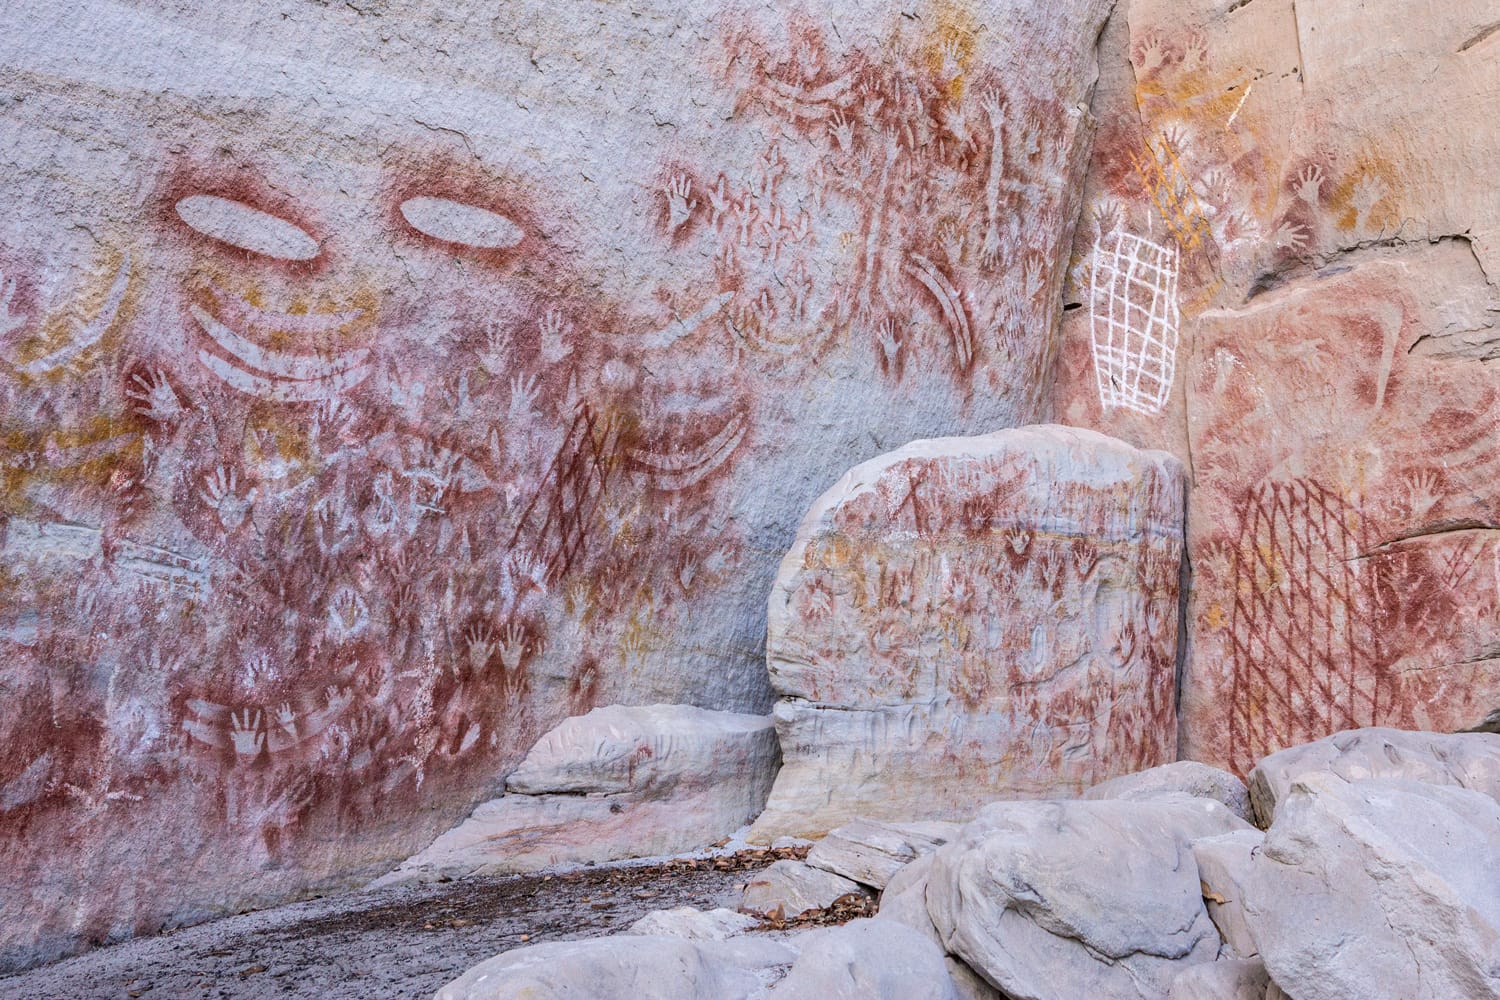 Aboriginal rock art at Carnarvon Gorge, Queensland, Australia